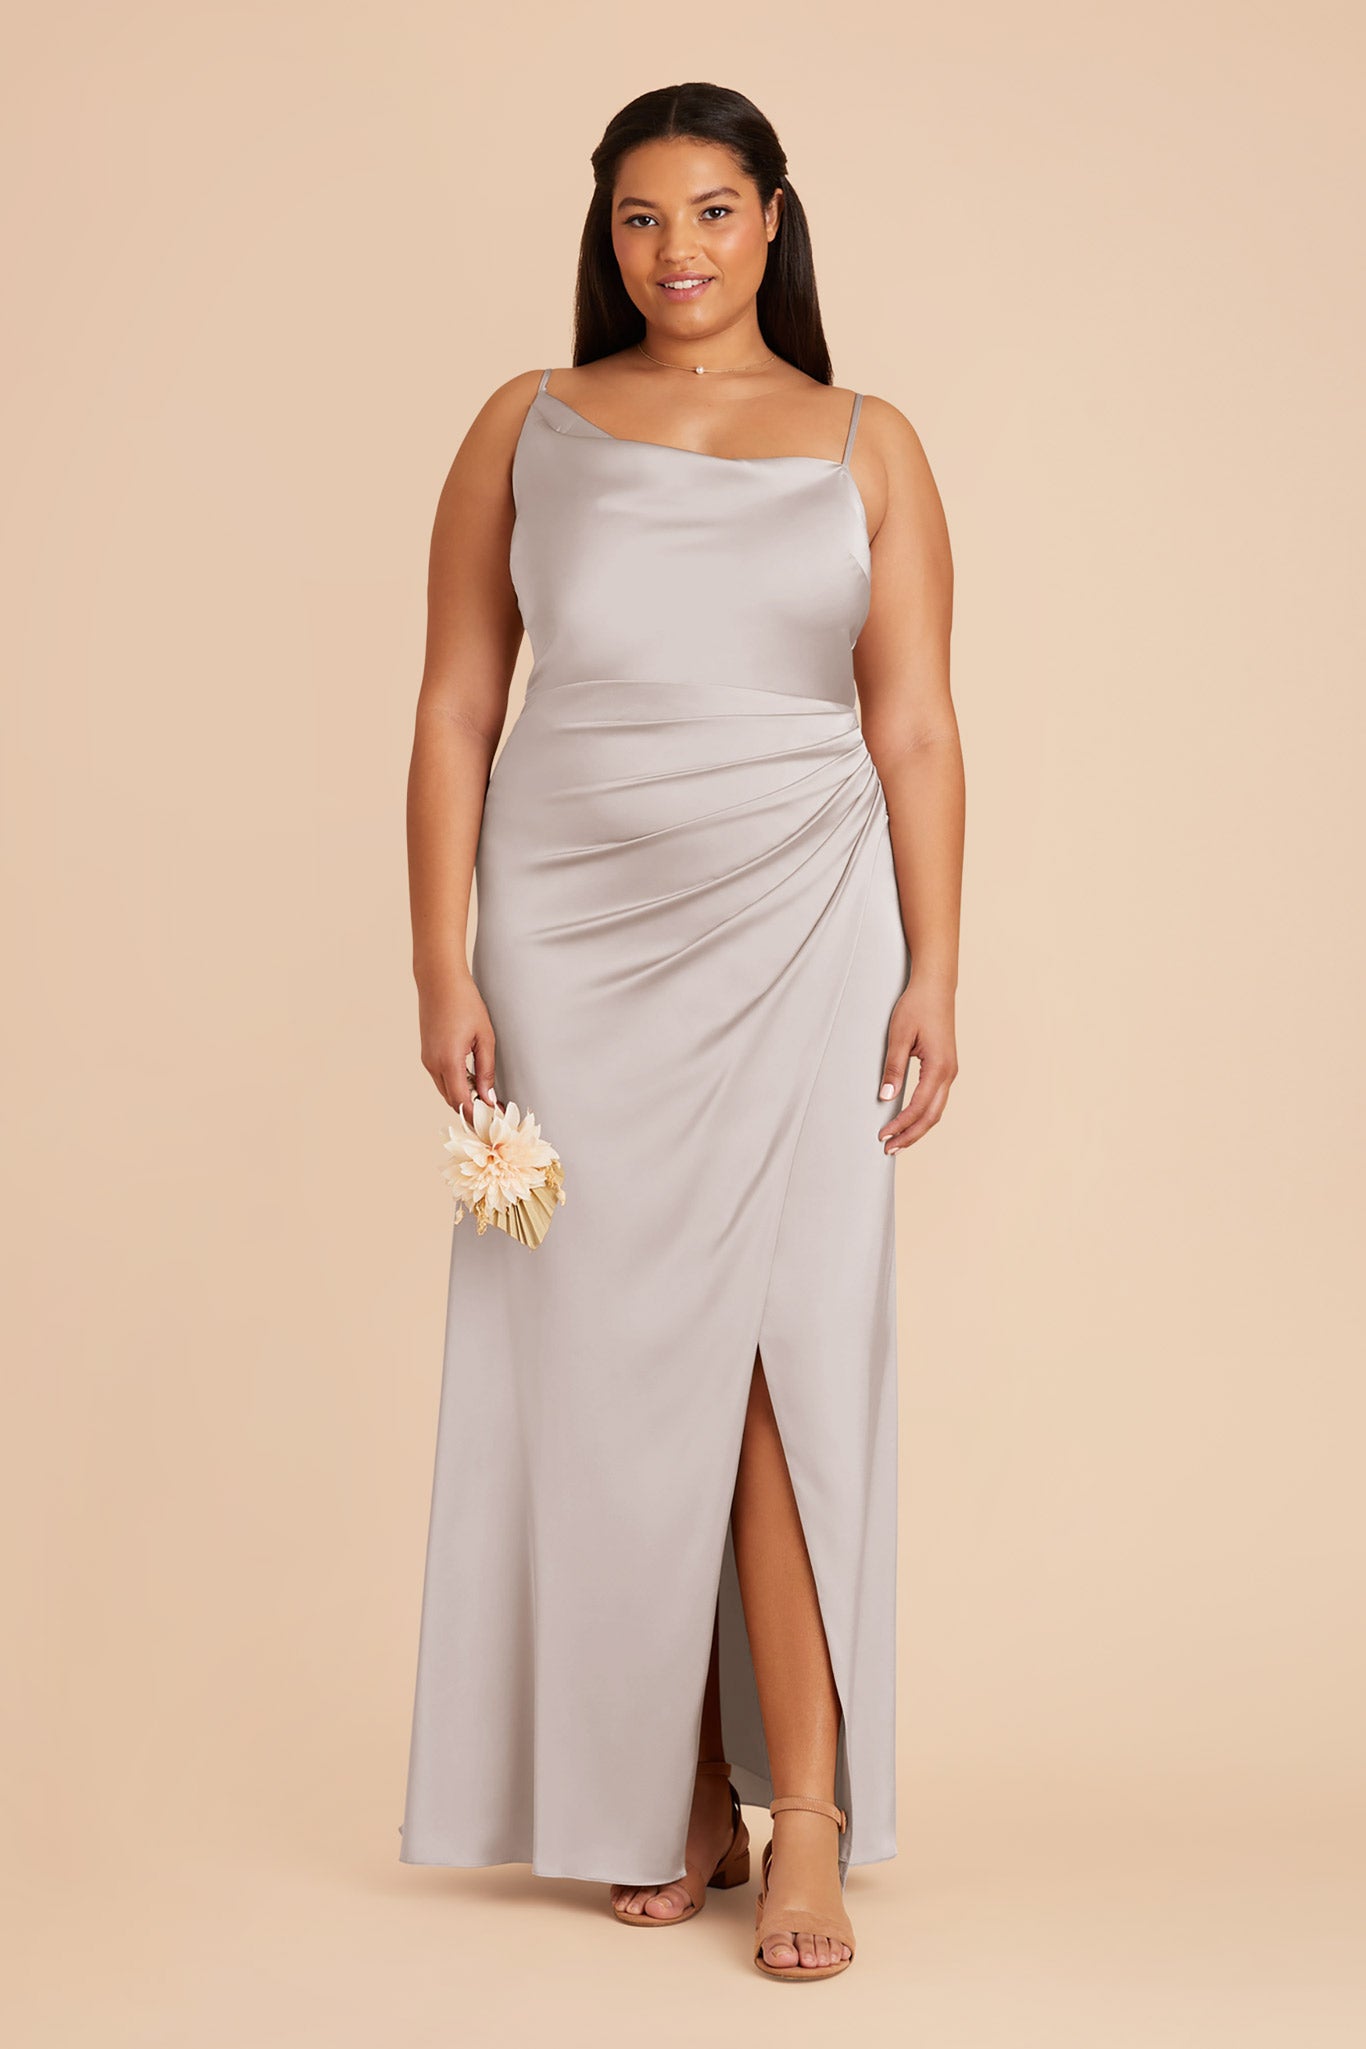 Platinum Jennifer Matte Satin Dress by Birdy Grey